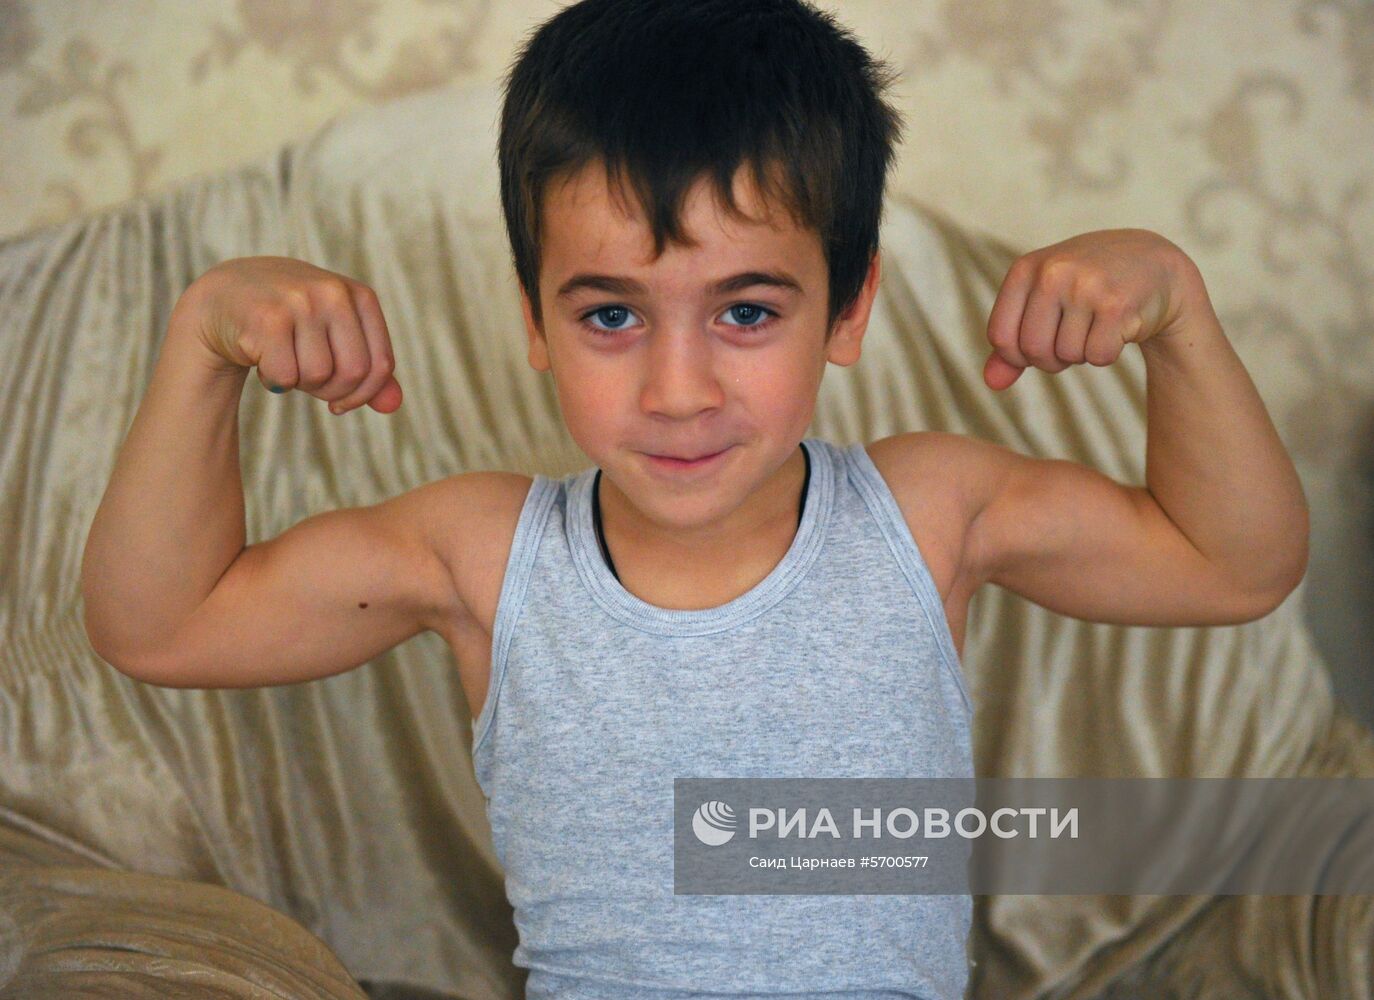 Пятилетний житель чеченского села Дуба-Юрт Рахим Куриев